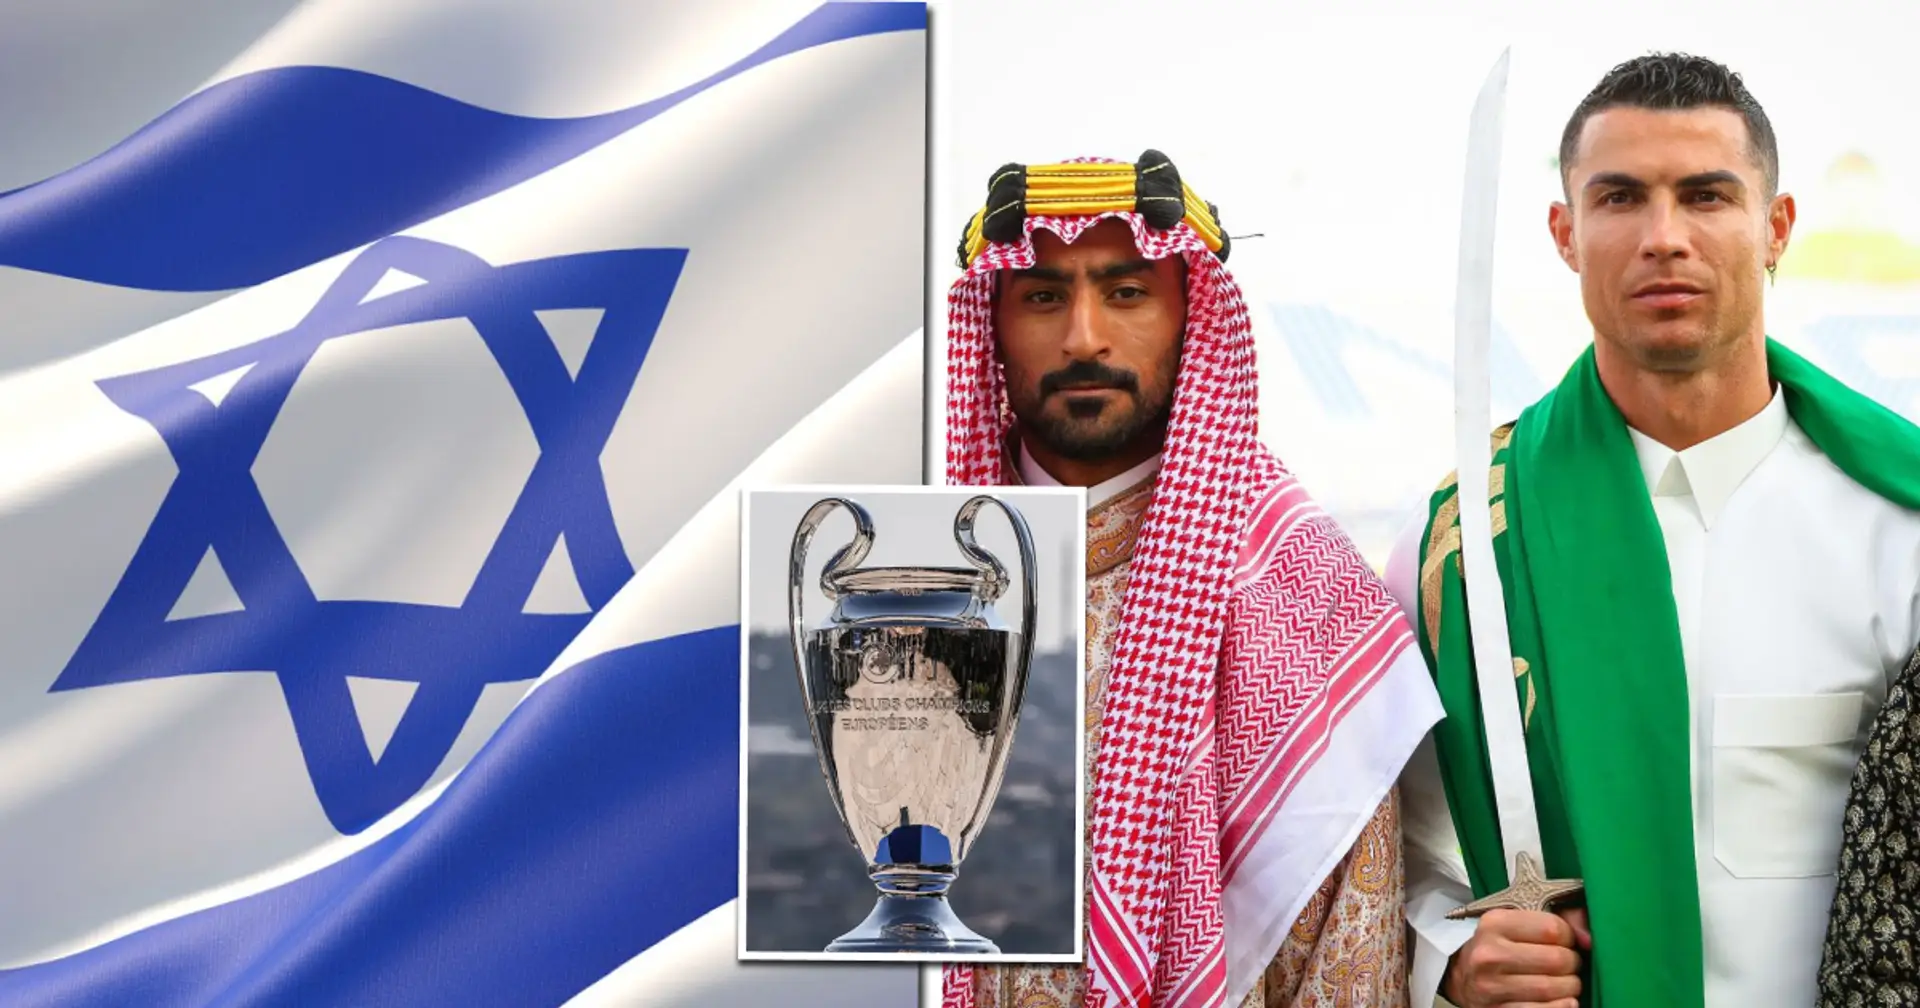 "Was ist denn mit Israel?": Fans aus aller Welt stellen dem UEFA-Präsidenten diese Frage nach seinem jüngsten Saudi-Zitat  